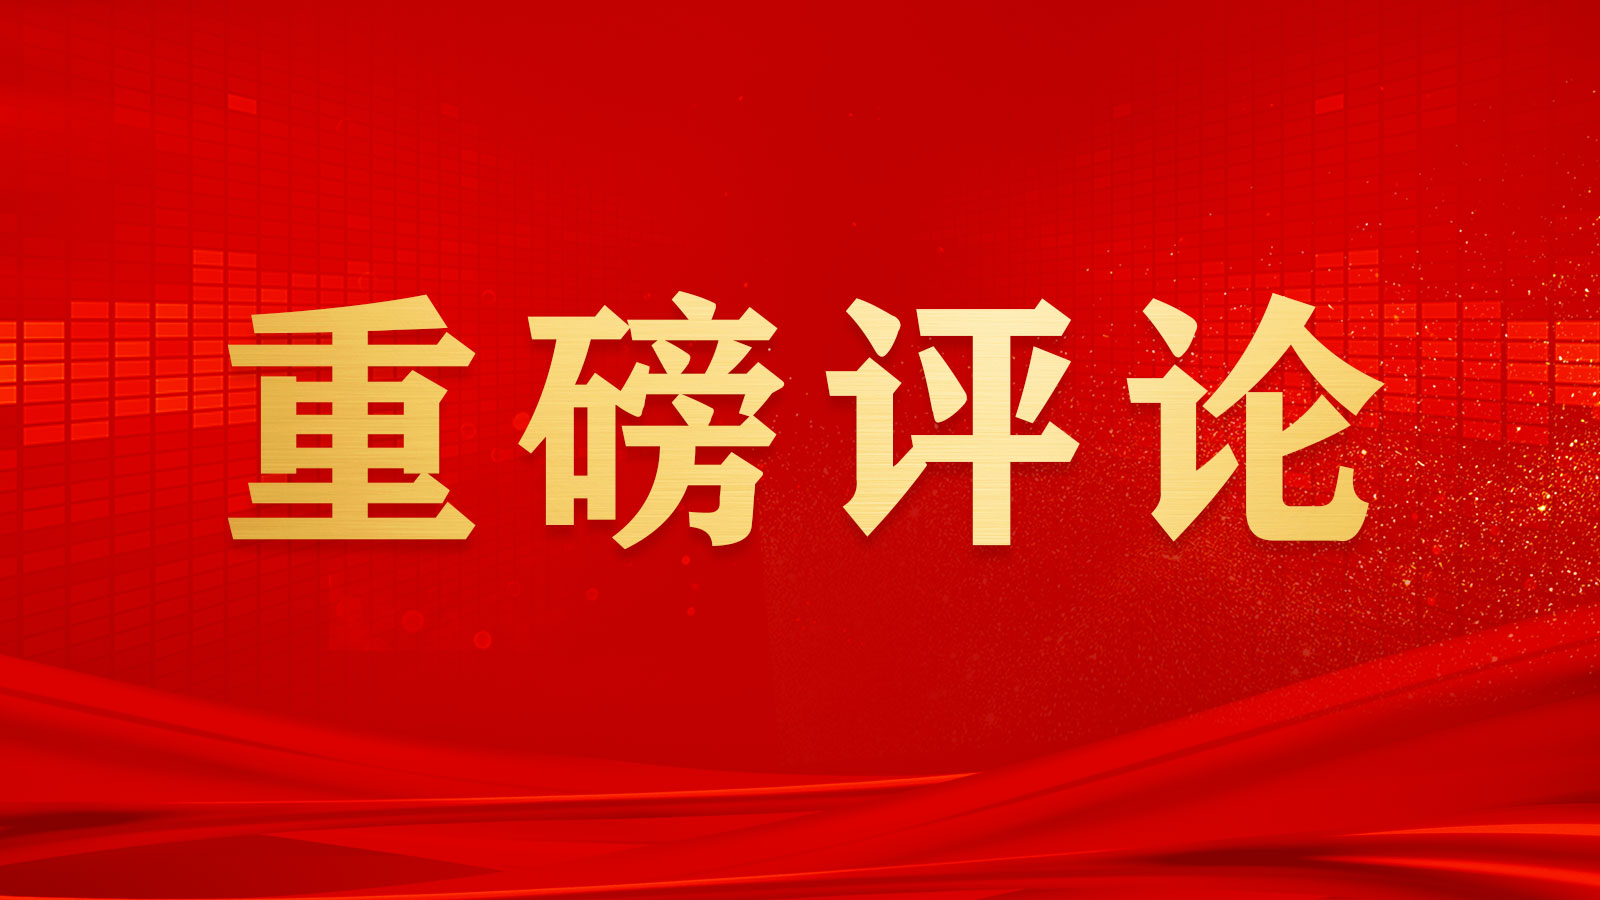 团结奋斗是中国人民创造历史伟业的必由之路